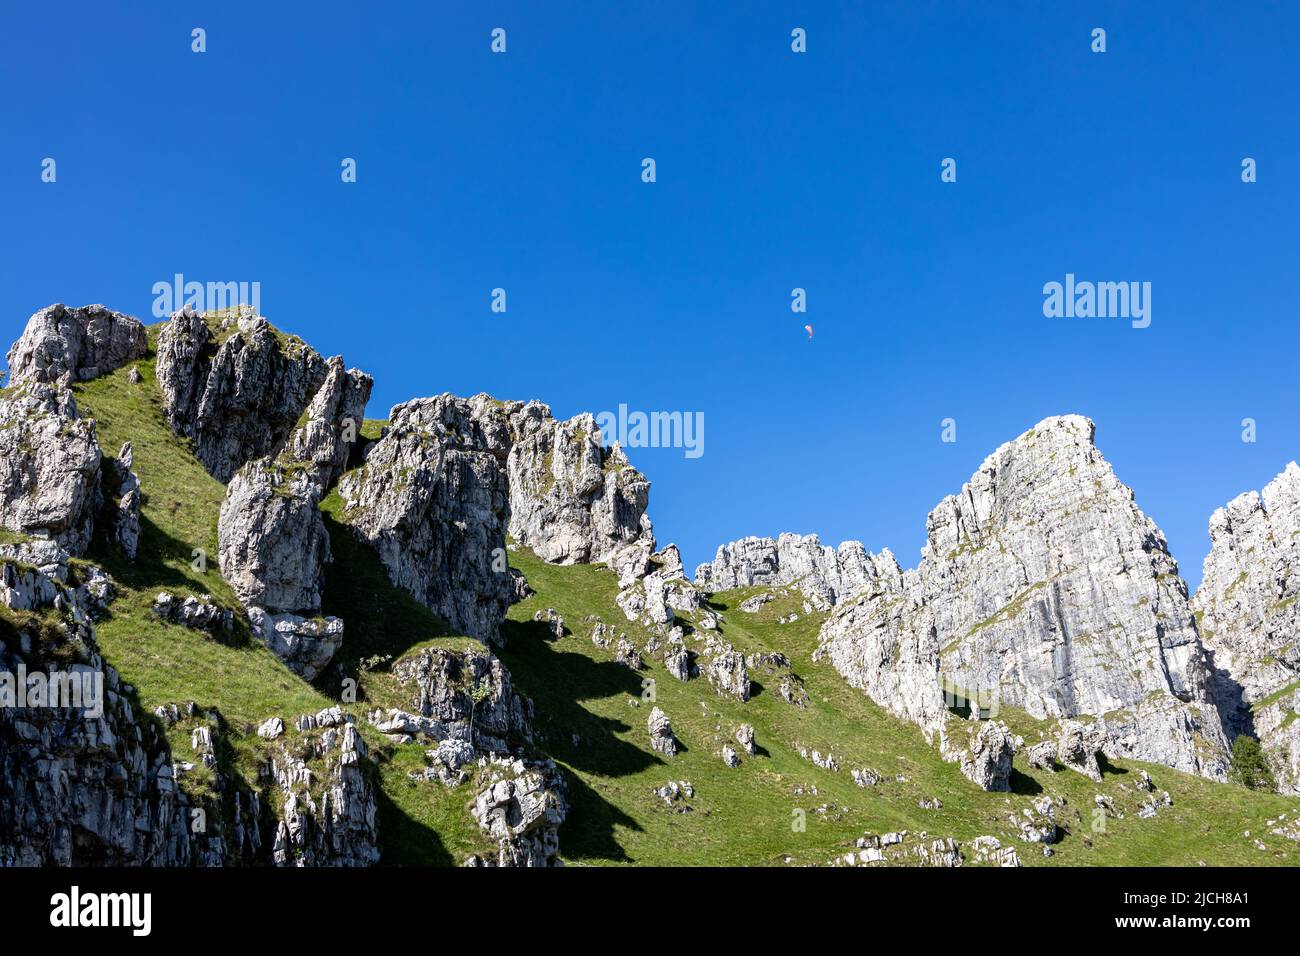 Wunderschöne italienische Dolomiten Berge mit Gleitschirm fliegen in den blauen Himmel Stockfoto